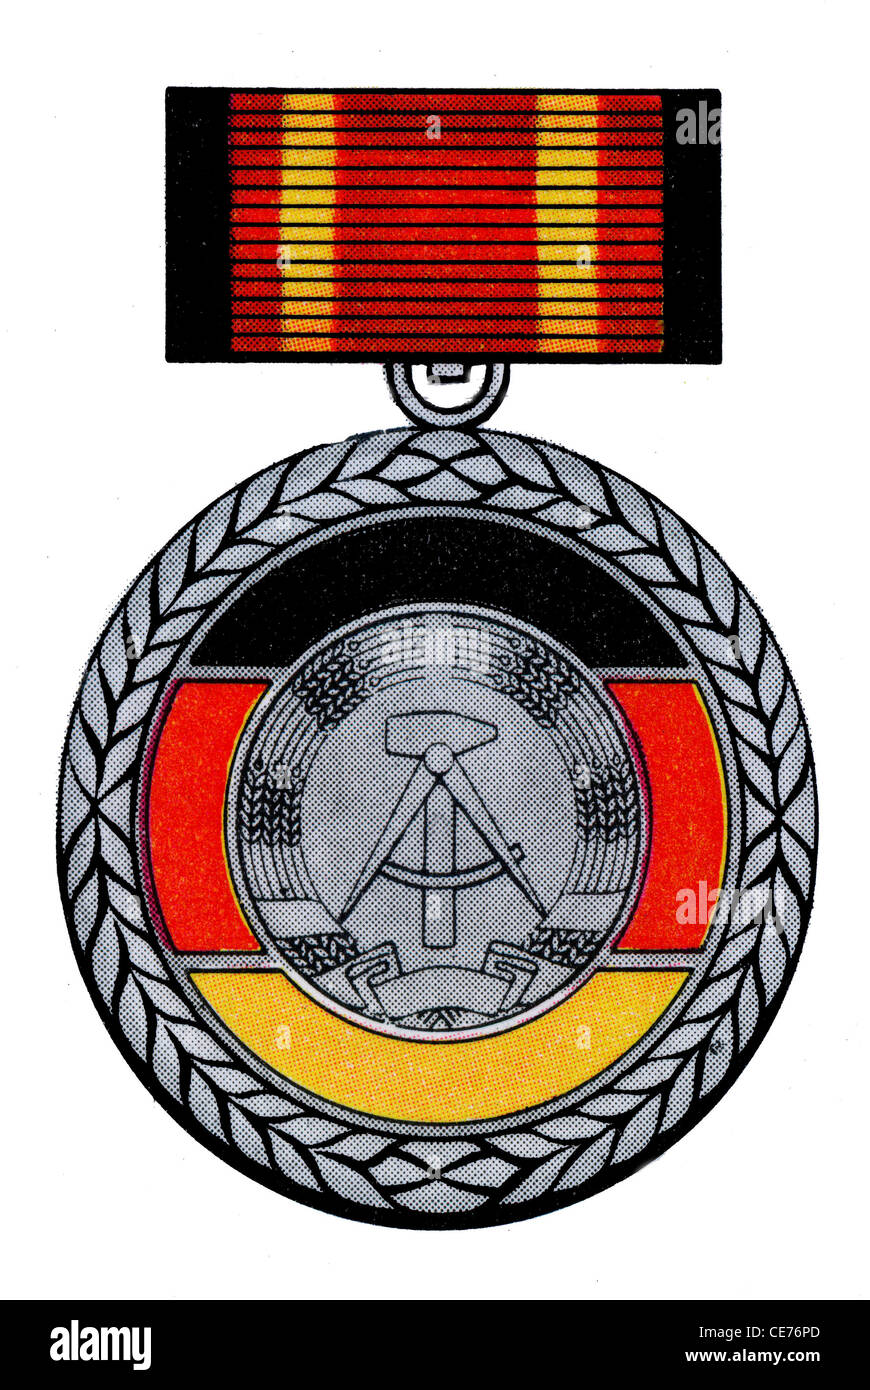 Medal of the GDR: Verdienstmedaille der Deutschen Demokratischen Republik. Stock Photo